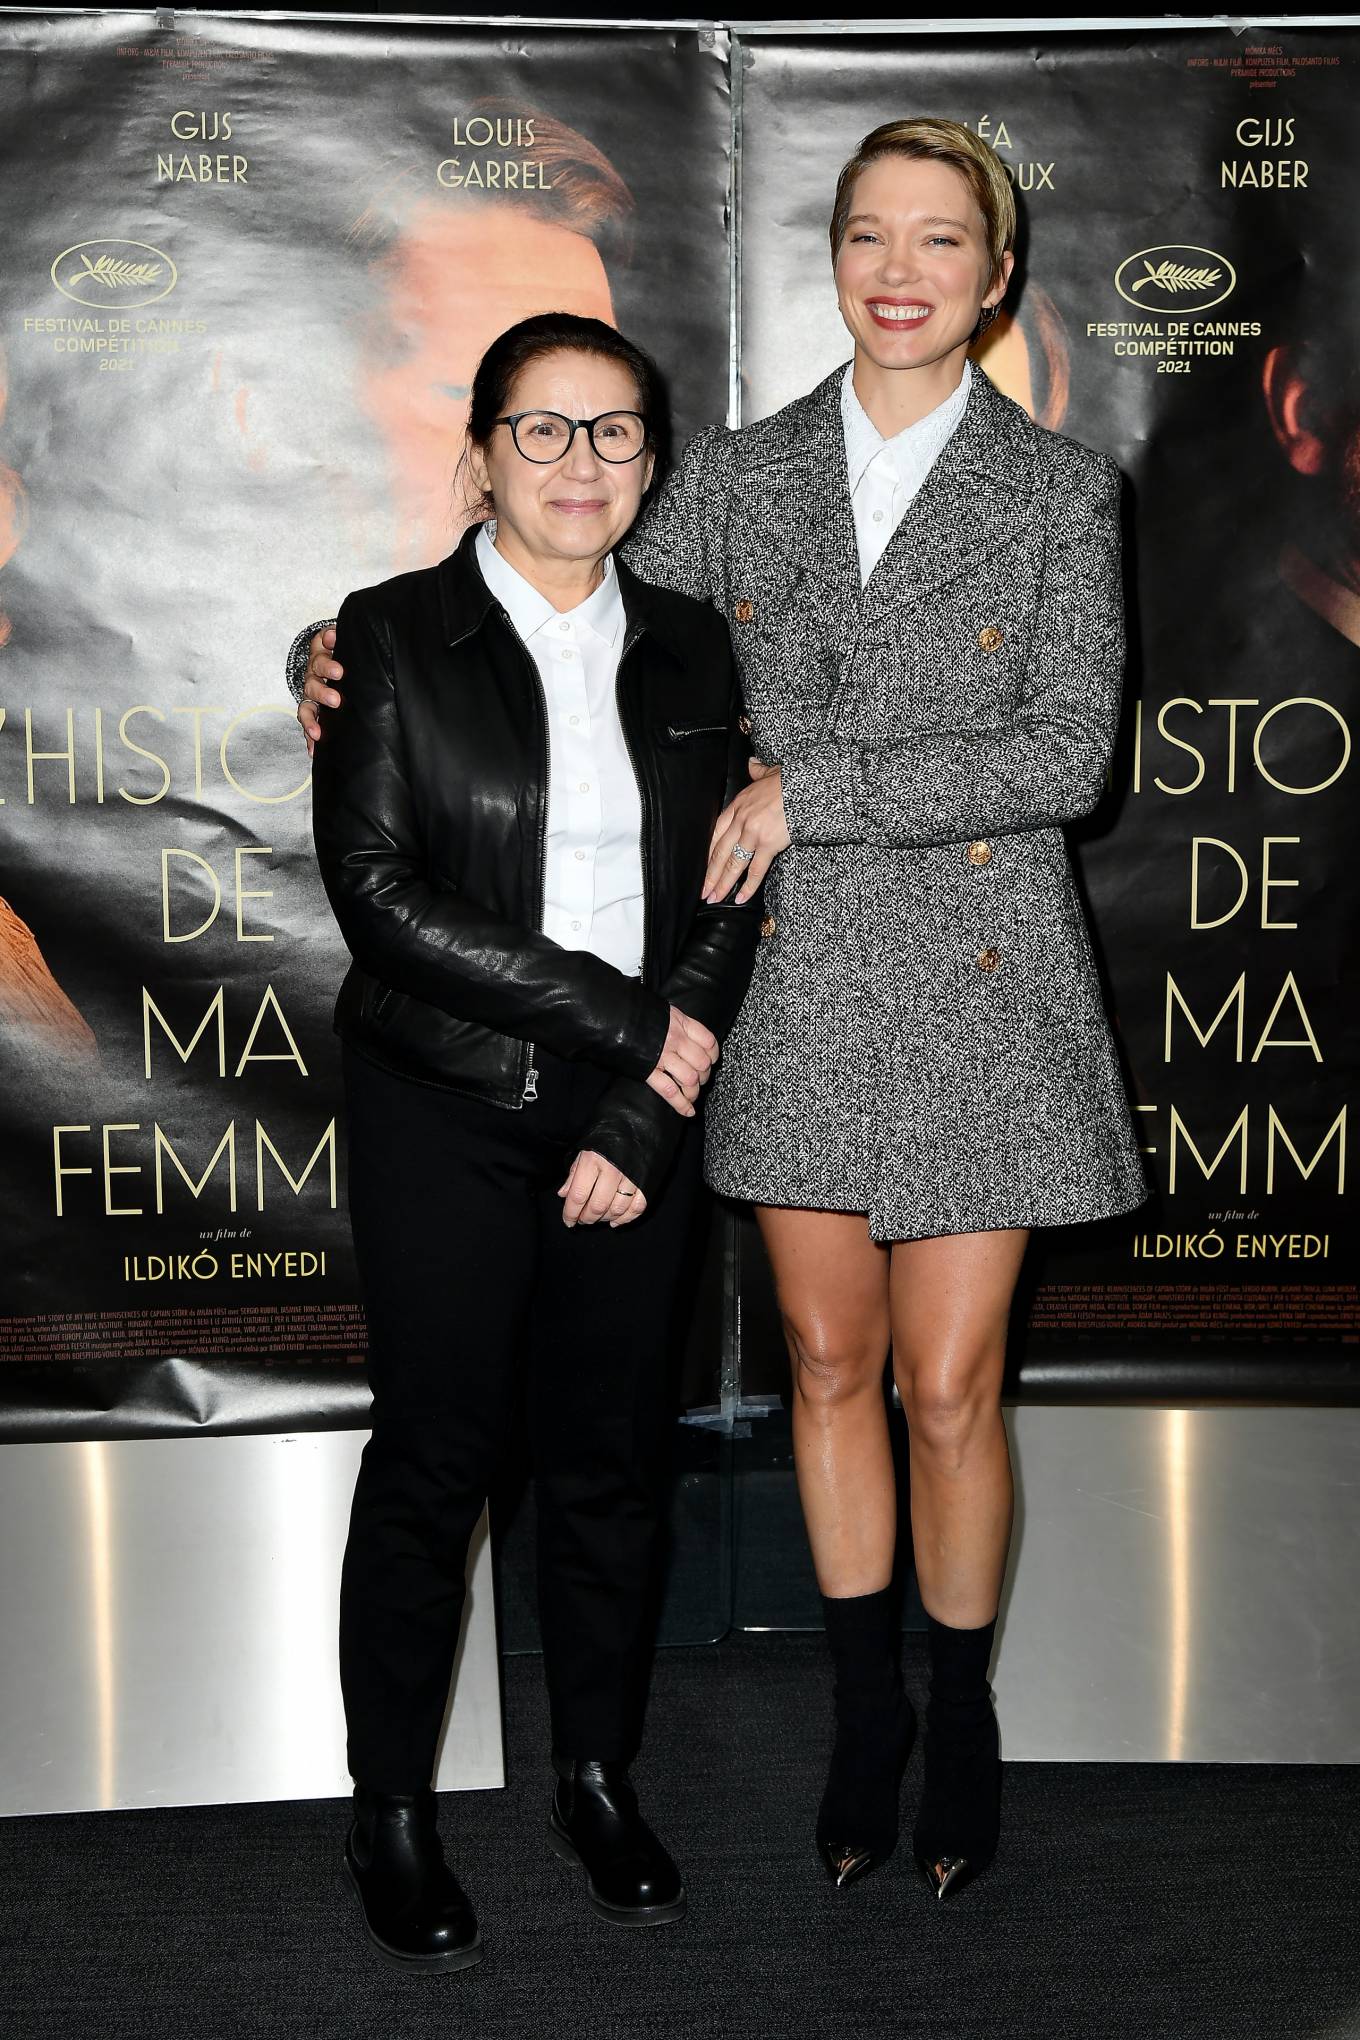 Lea Seydoux - Attends L'Histoire De Ma Femme Premiere held at the UGC Cite Les Halles in Paris